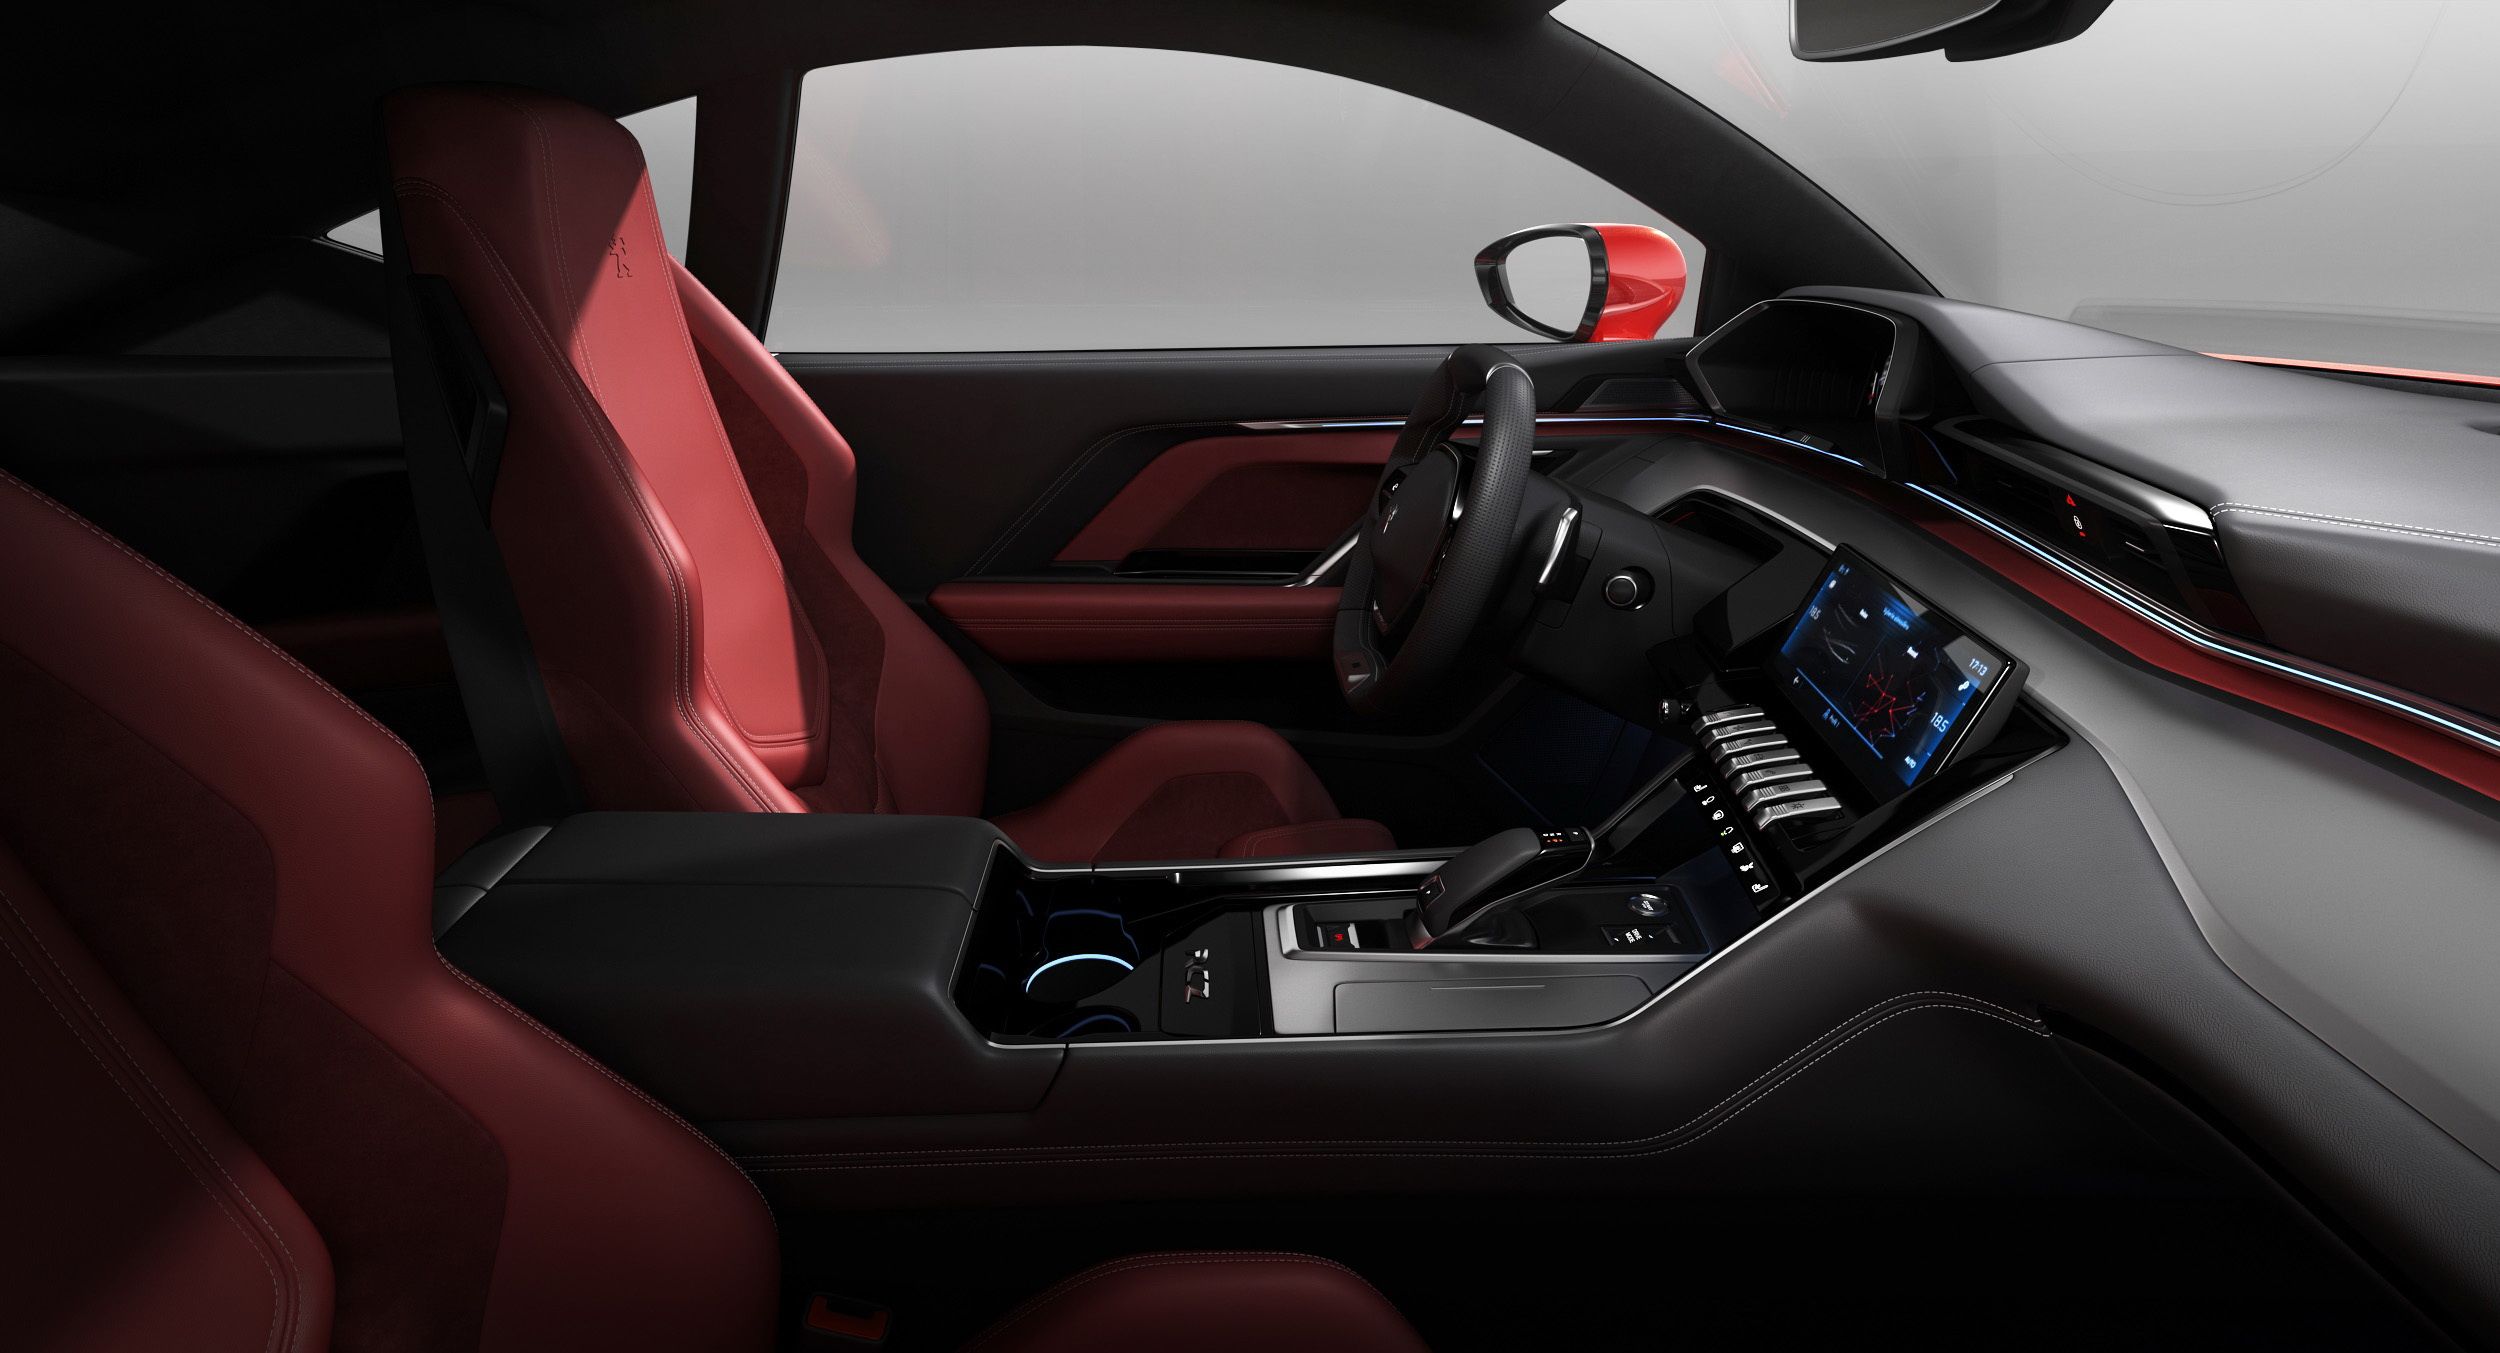  Ruang kabin yang futuristik adalah nilai lebih bagi keistimewaan interior coupe sporty ini.*/Astra Peugeot  